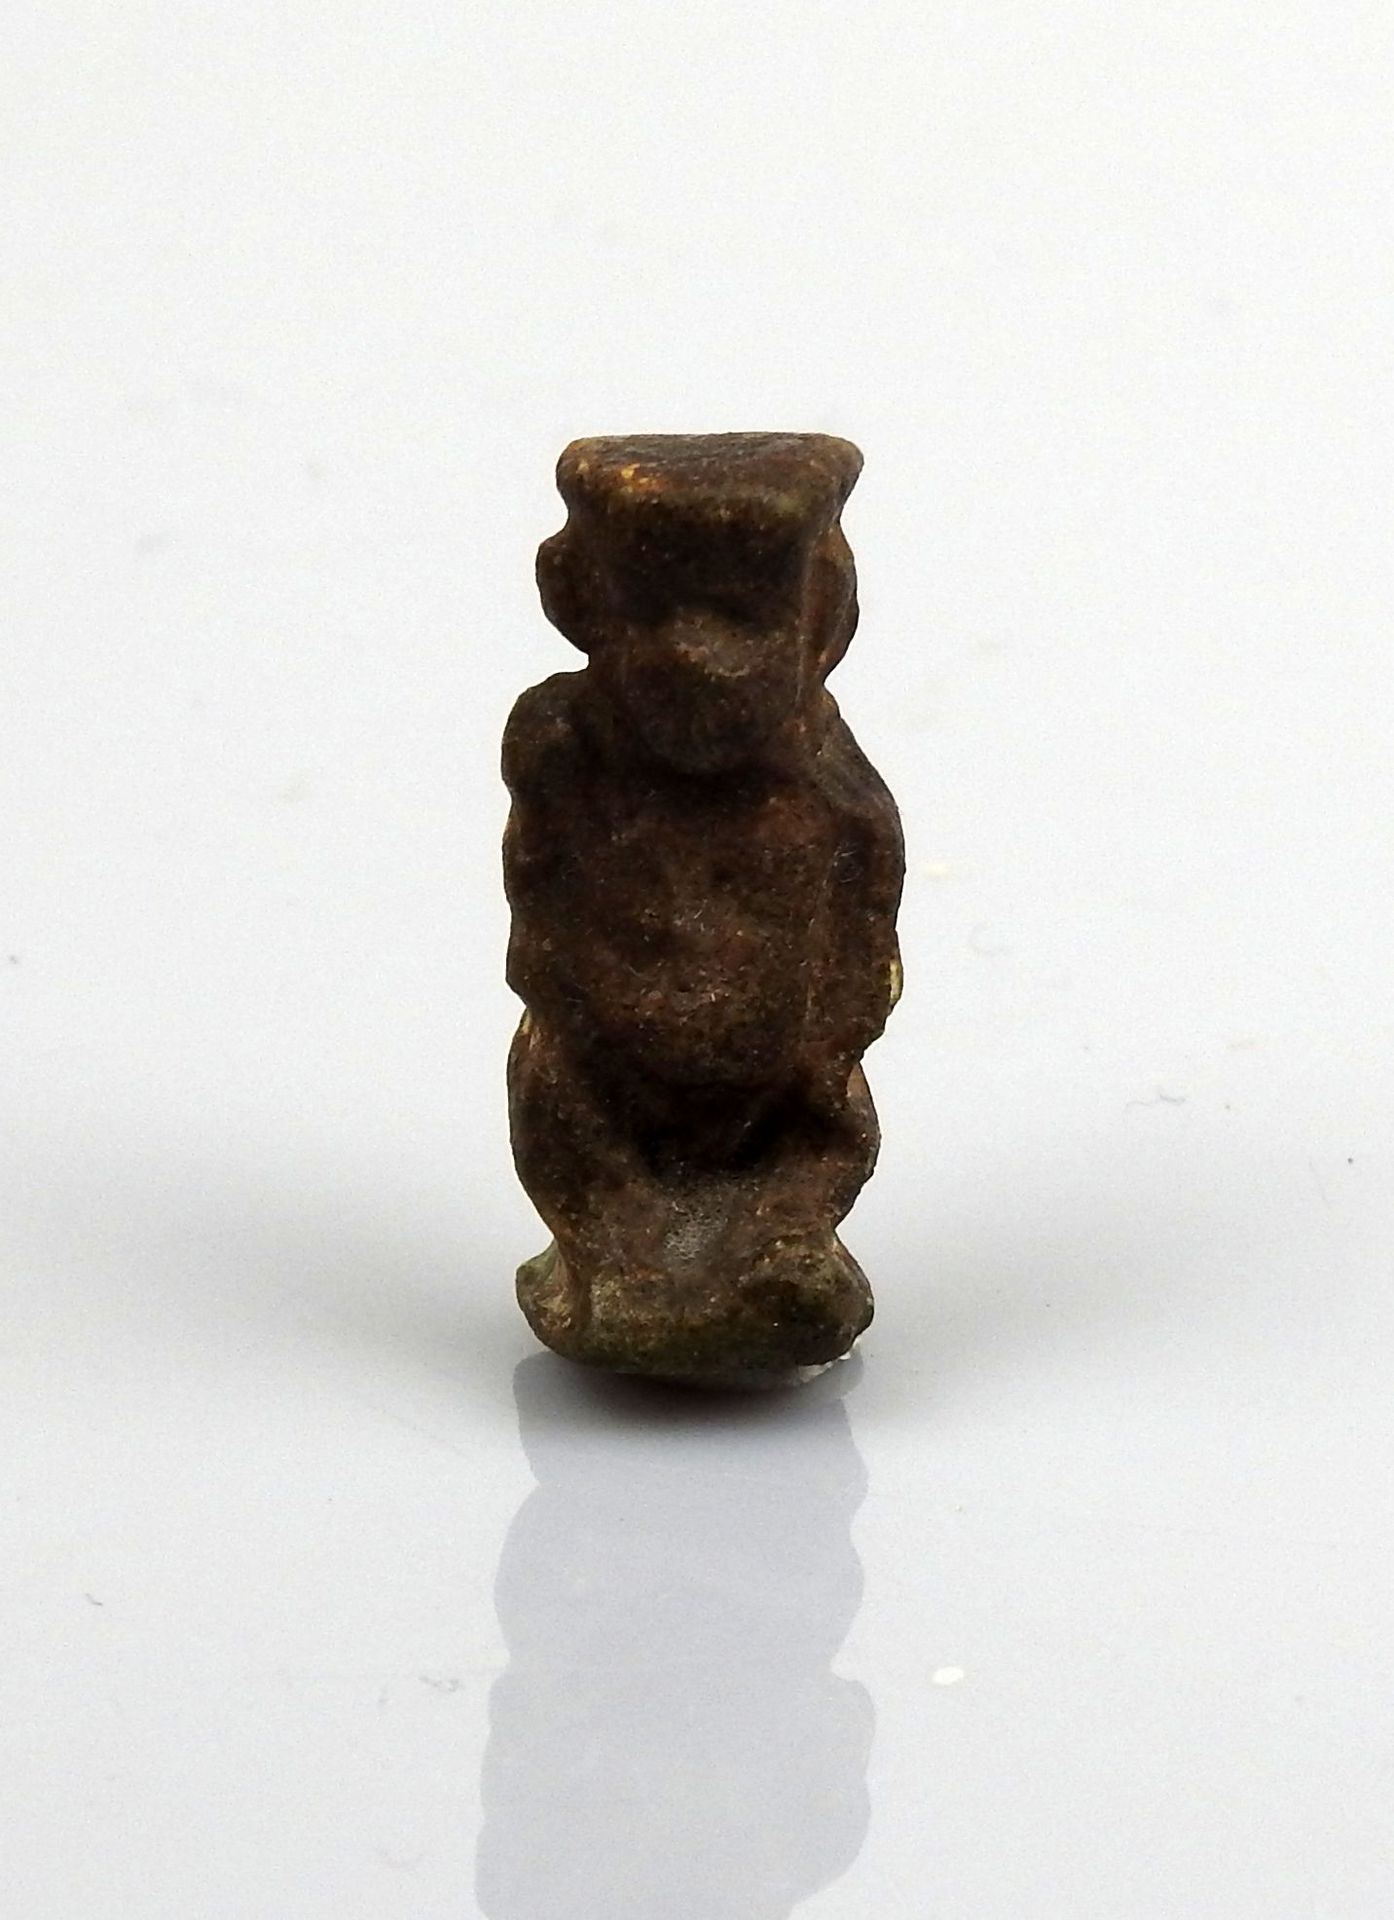 Null 代表贝斯的护身符

熔块2.5厘米

埃及第二十六至第三王朝晚期